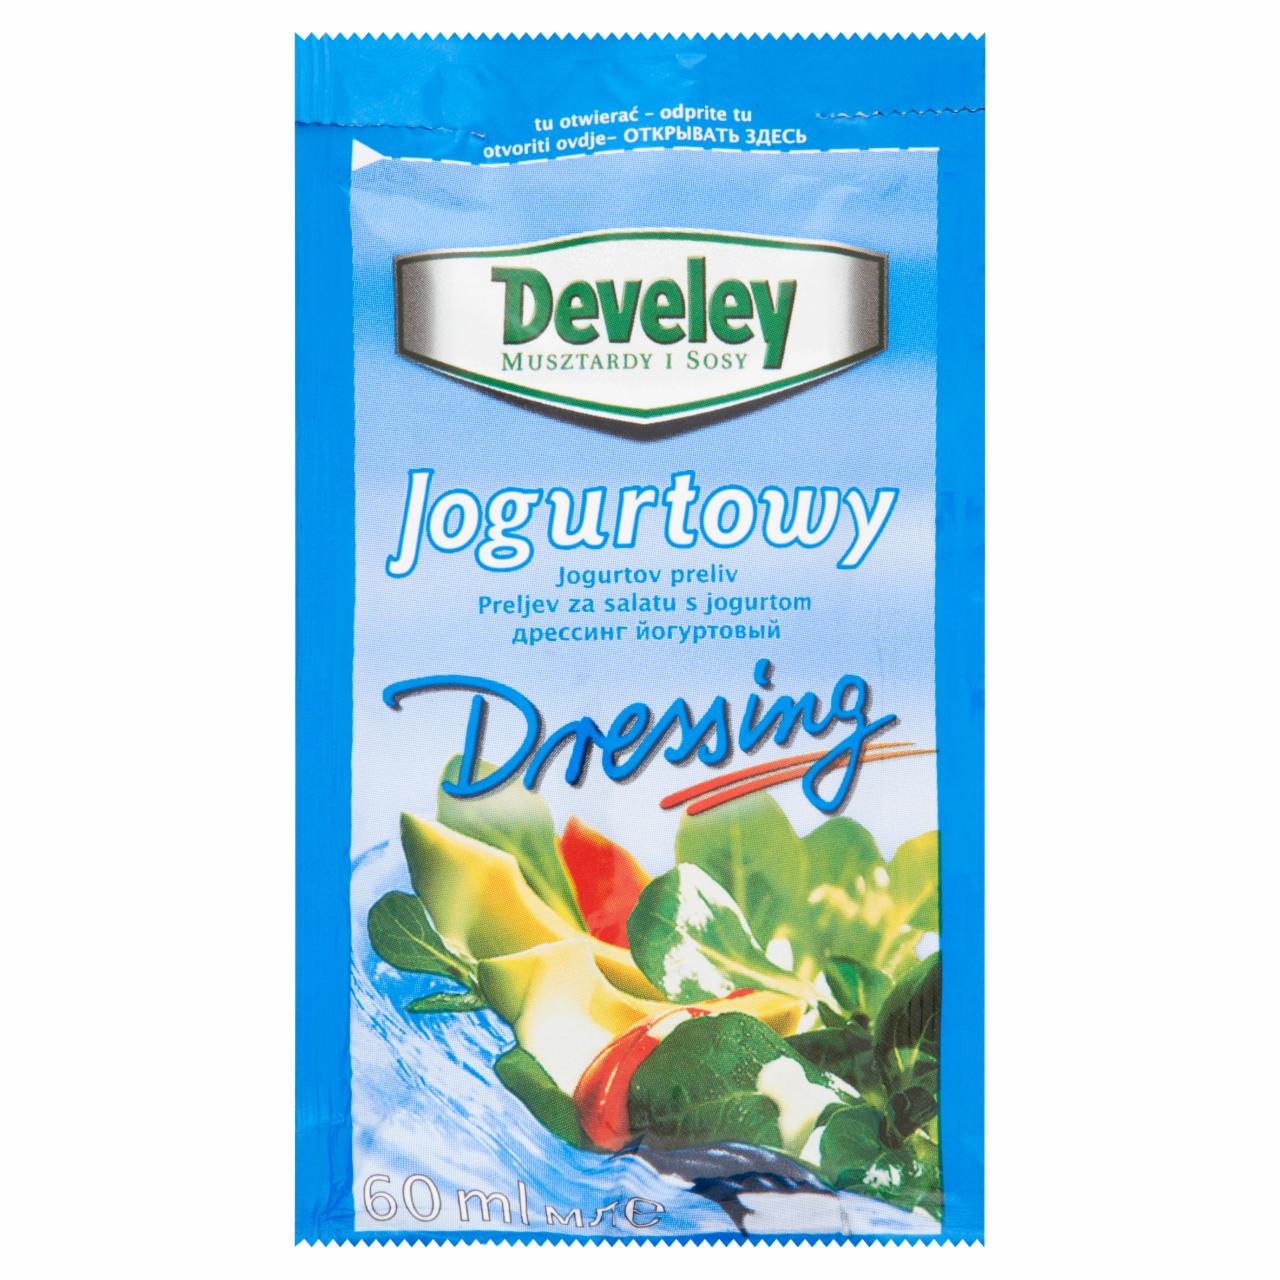 Zdjęcia - Develey Dressing jogurtowy 60 ml